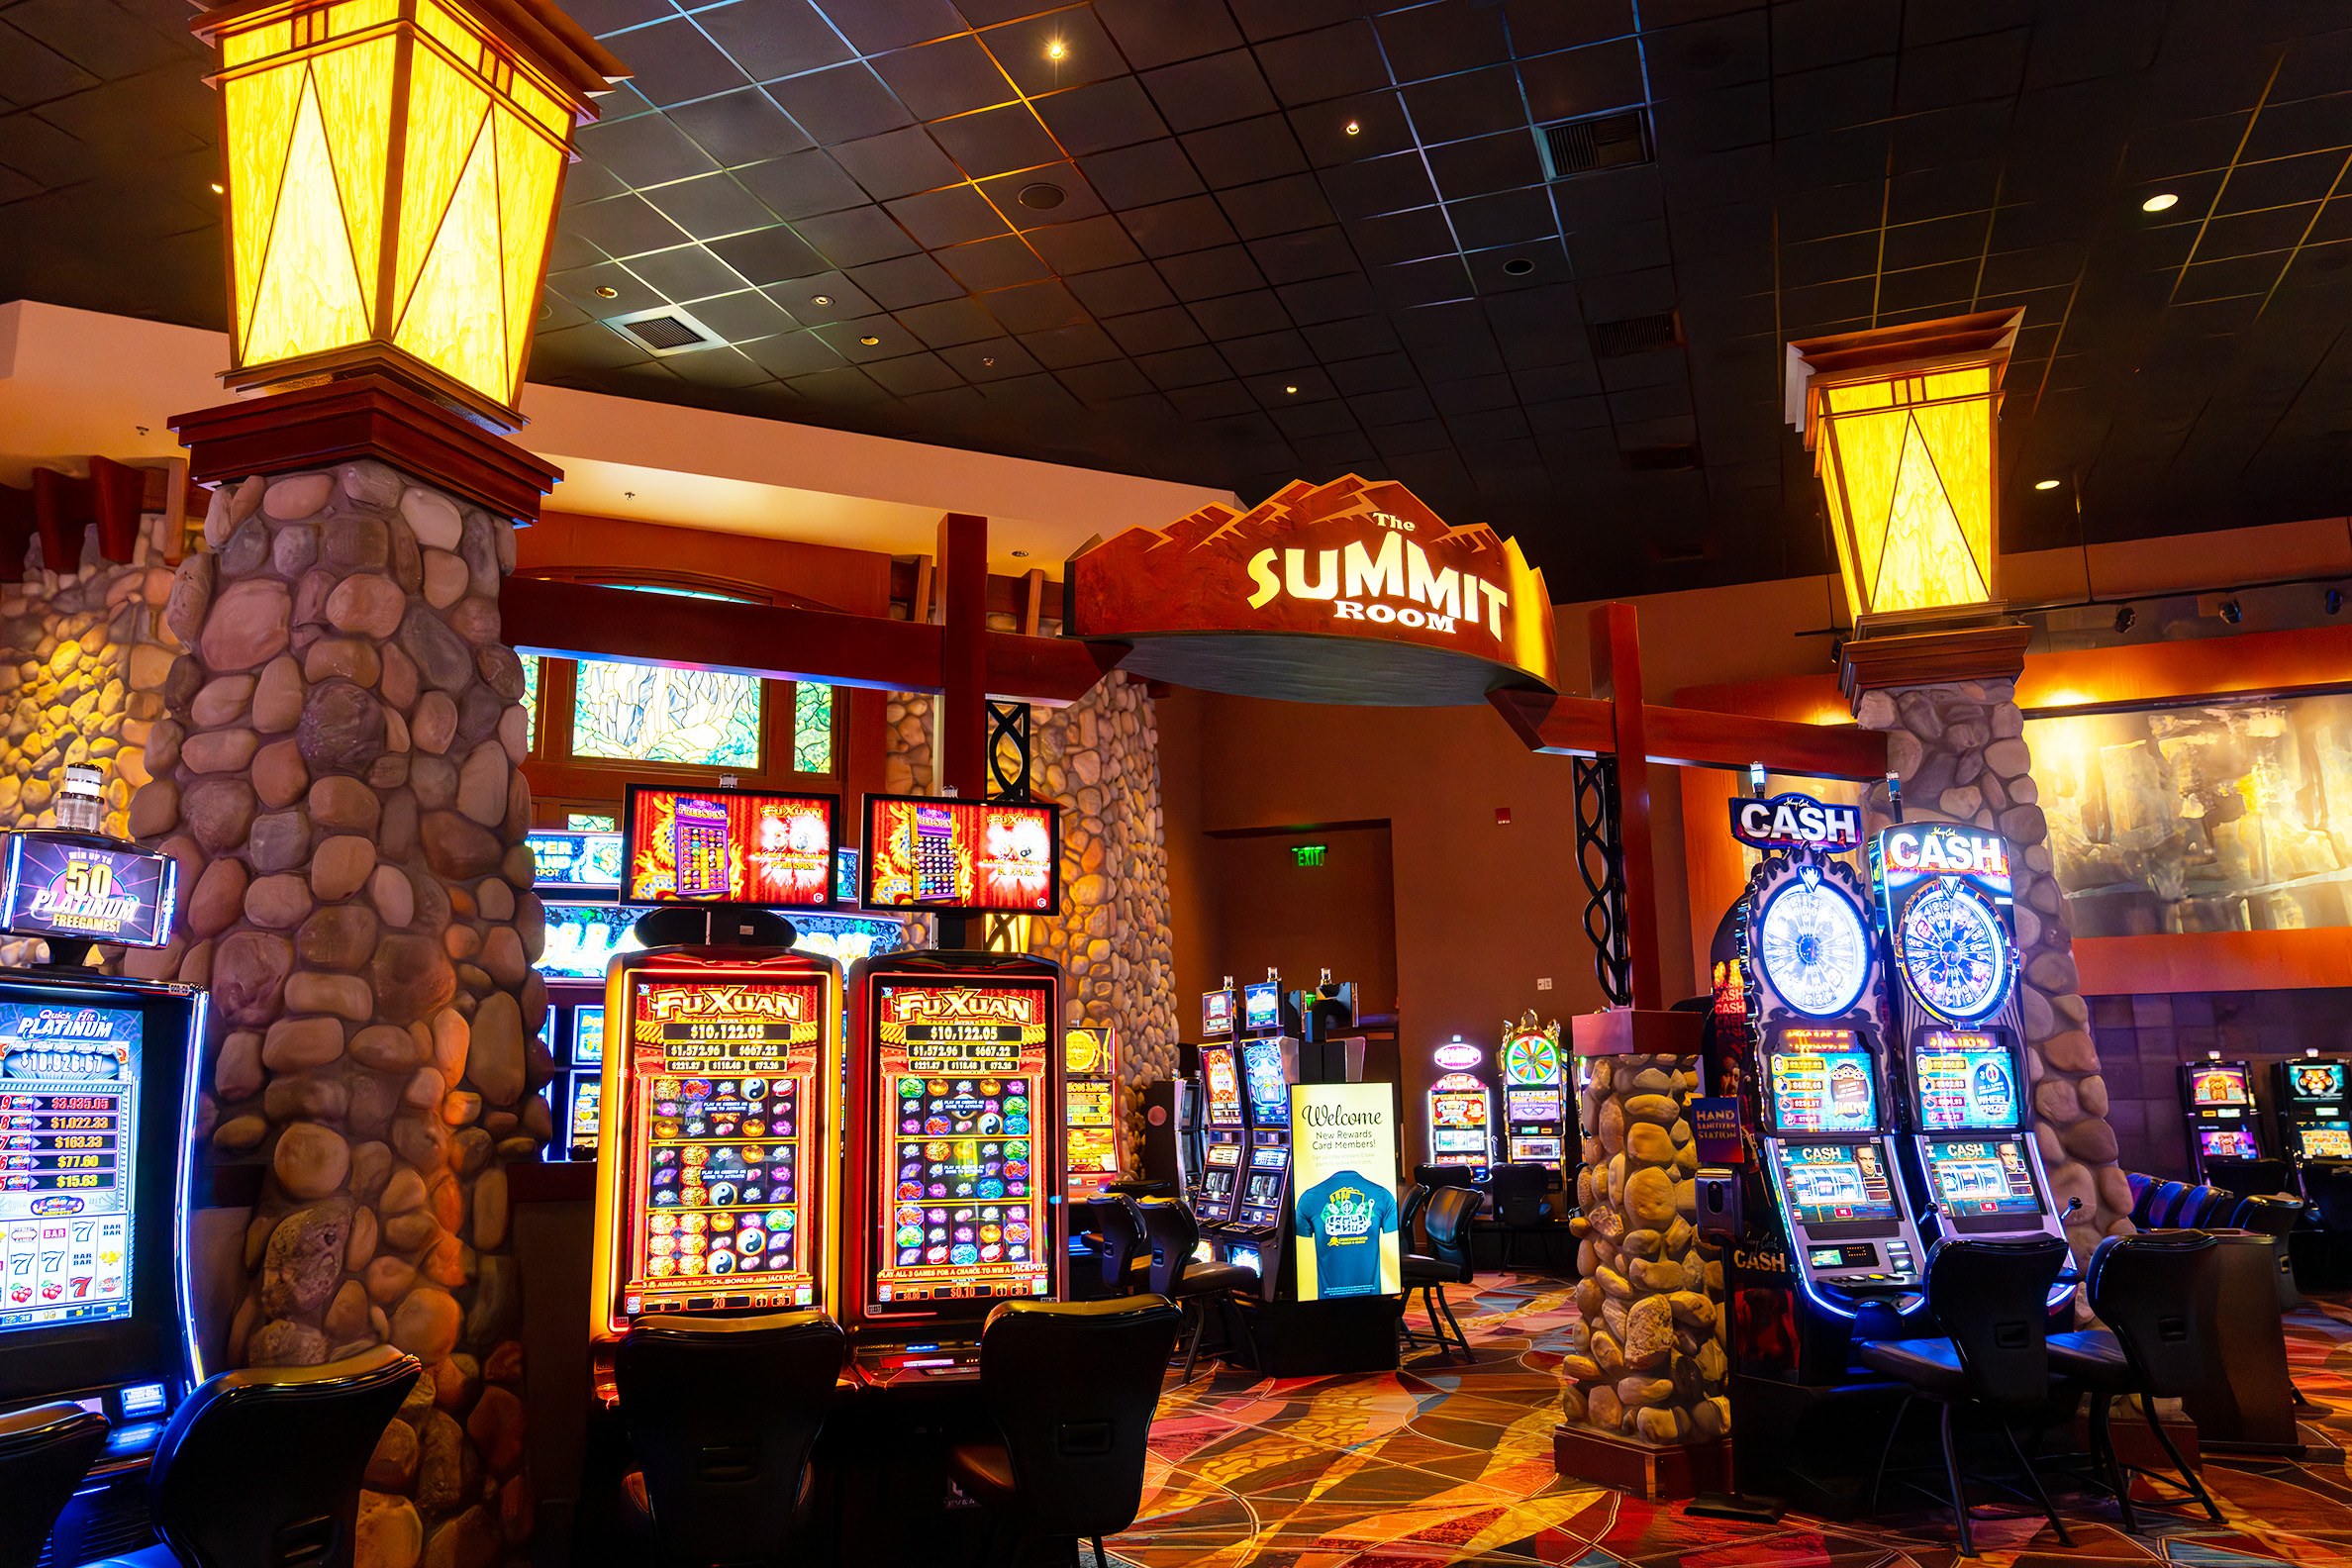 Gold Shark and Silver Shark Betting Casino Gambling Game Machine